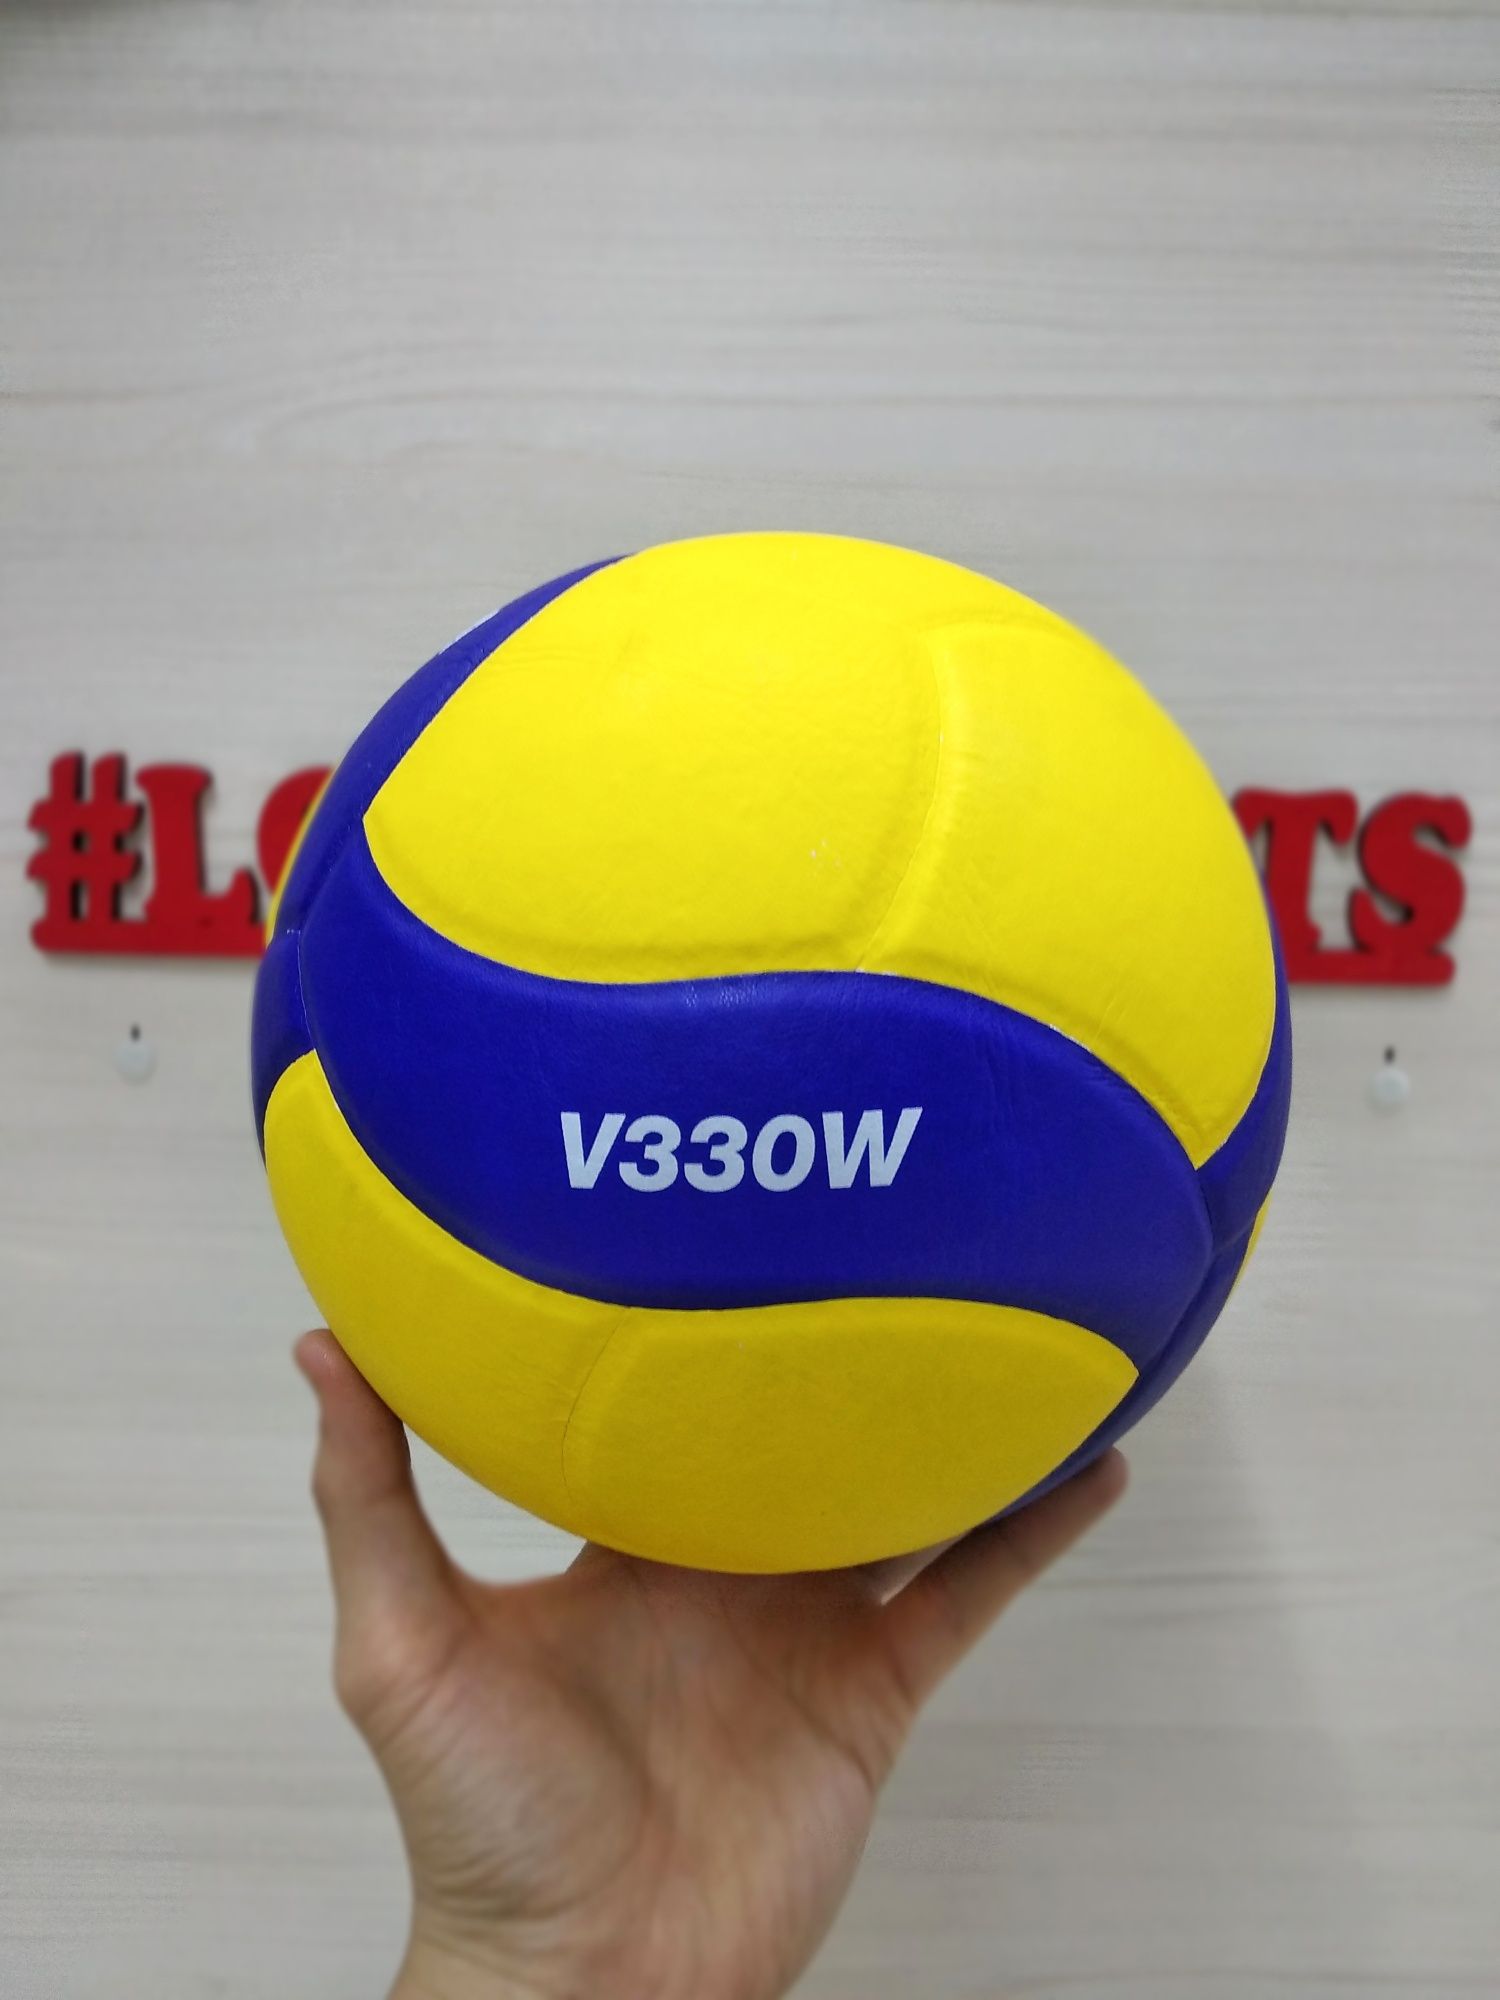 Волейбольный мяч новый оригинал олимпиада 2020 Mikasa V330W